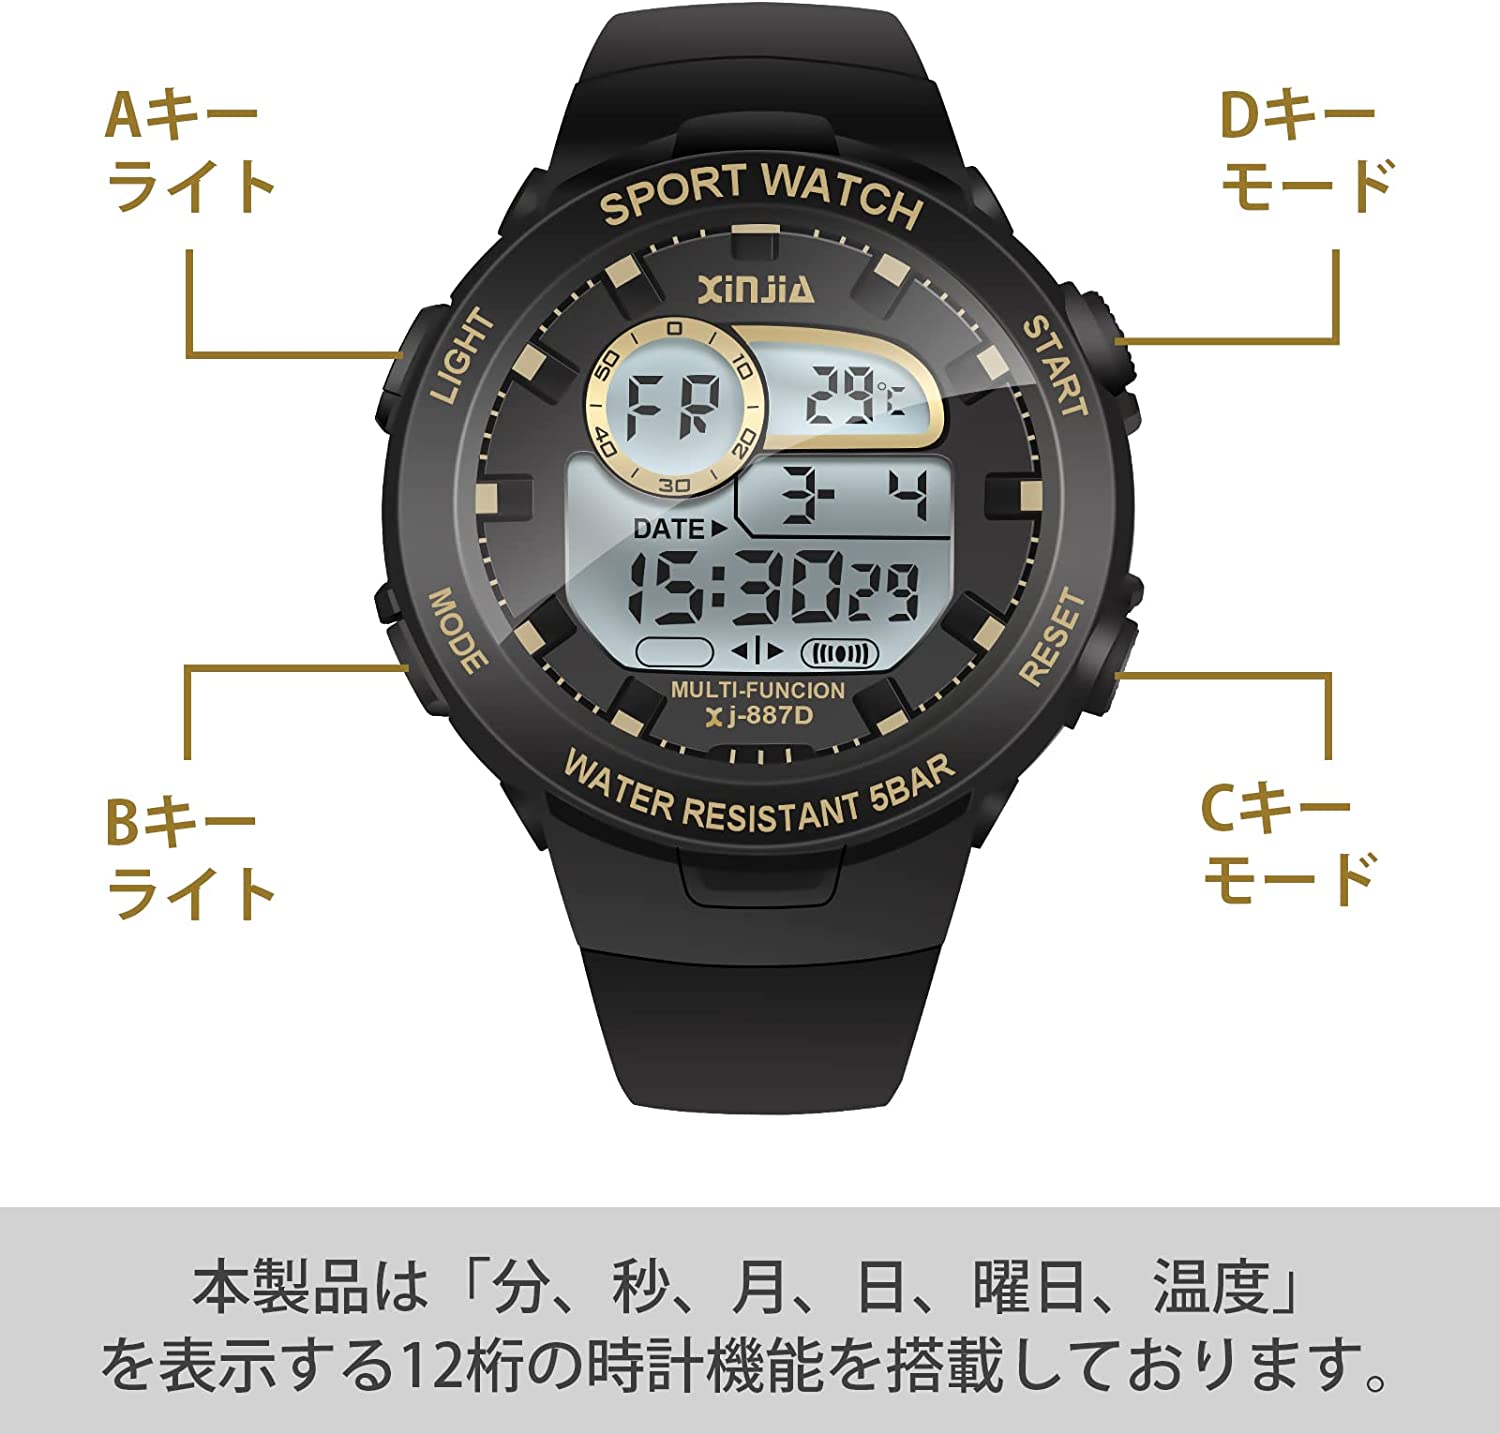 ブラック ゴールド かっこいいデザイン持つ子供用腕時計です 時間はもちろん 日付や温度など情報も表示できます 時計の文字盤は夜光機能なので 夜も気楽に時間確認できます 子ども 腕時計 子供用 キッズ ウォッチ 防水 うで時計 電波時計 スポーツ 通学 デジタル腕時計